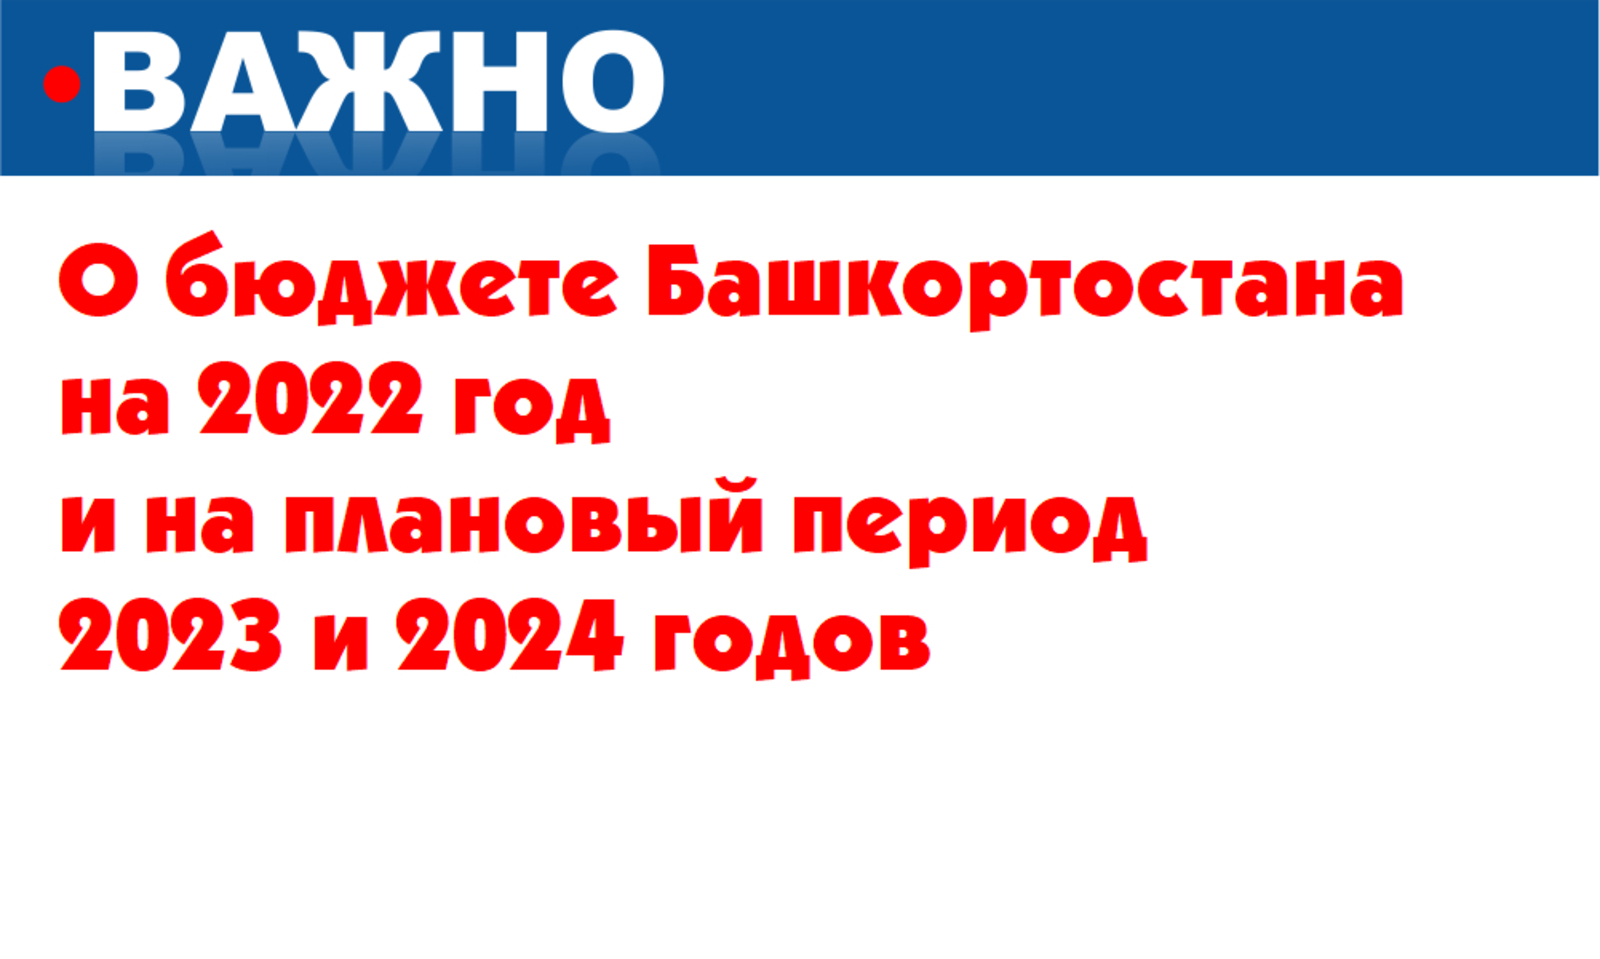 О бюджете Республики Башкортостан на 2022 год и на плановый период 2023 и 2024 годов